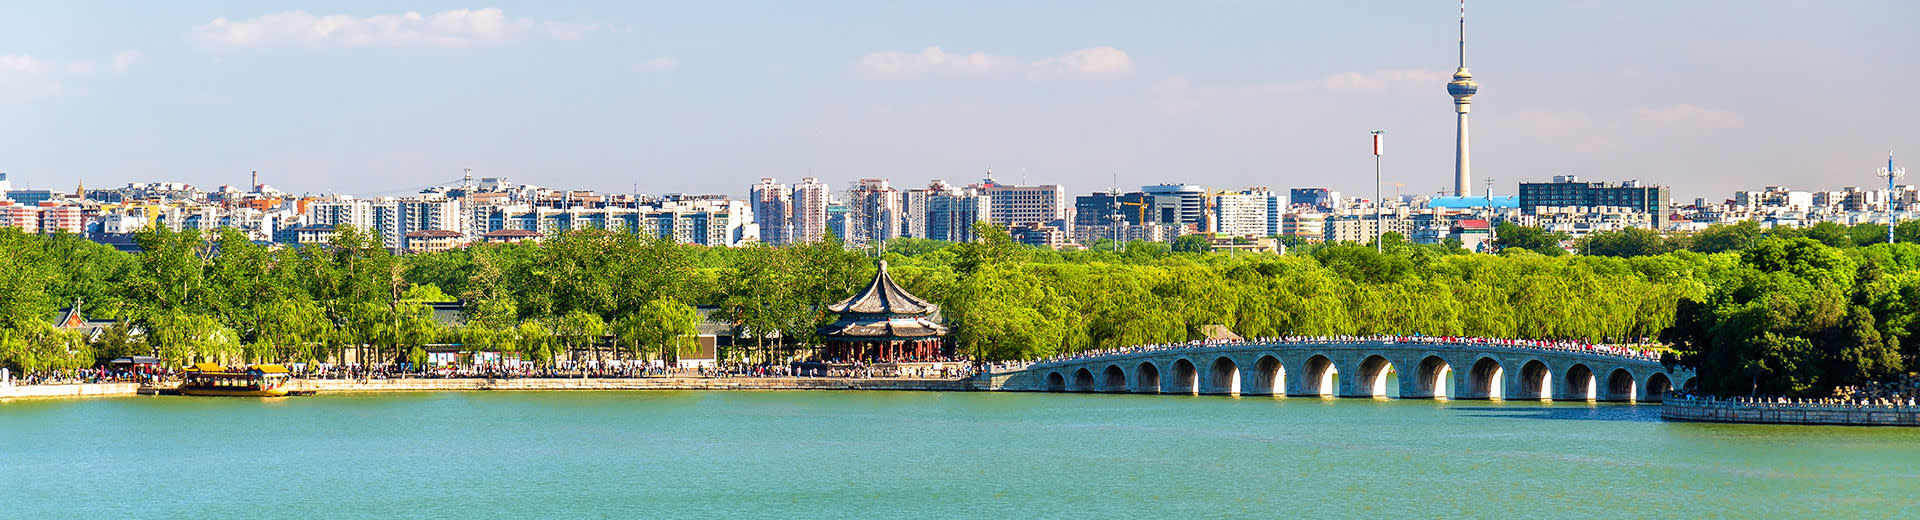 Schönes blaues Wasser verläuft unter einer Brücke, wobei sich die Skyline der Kunming im Hintergrund abzeichnet.